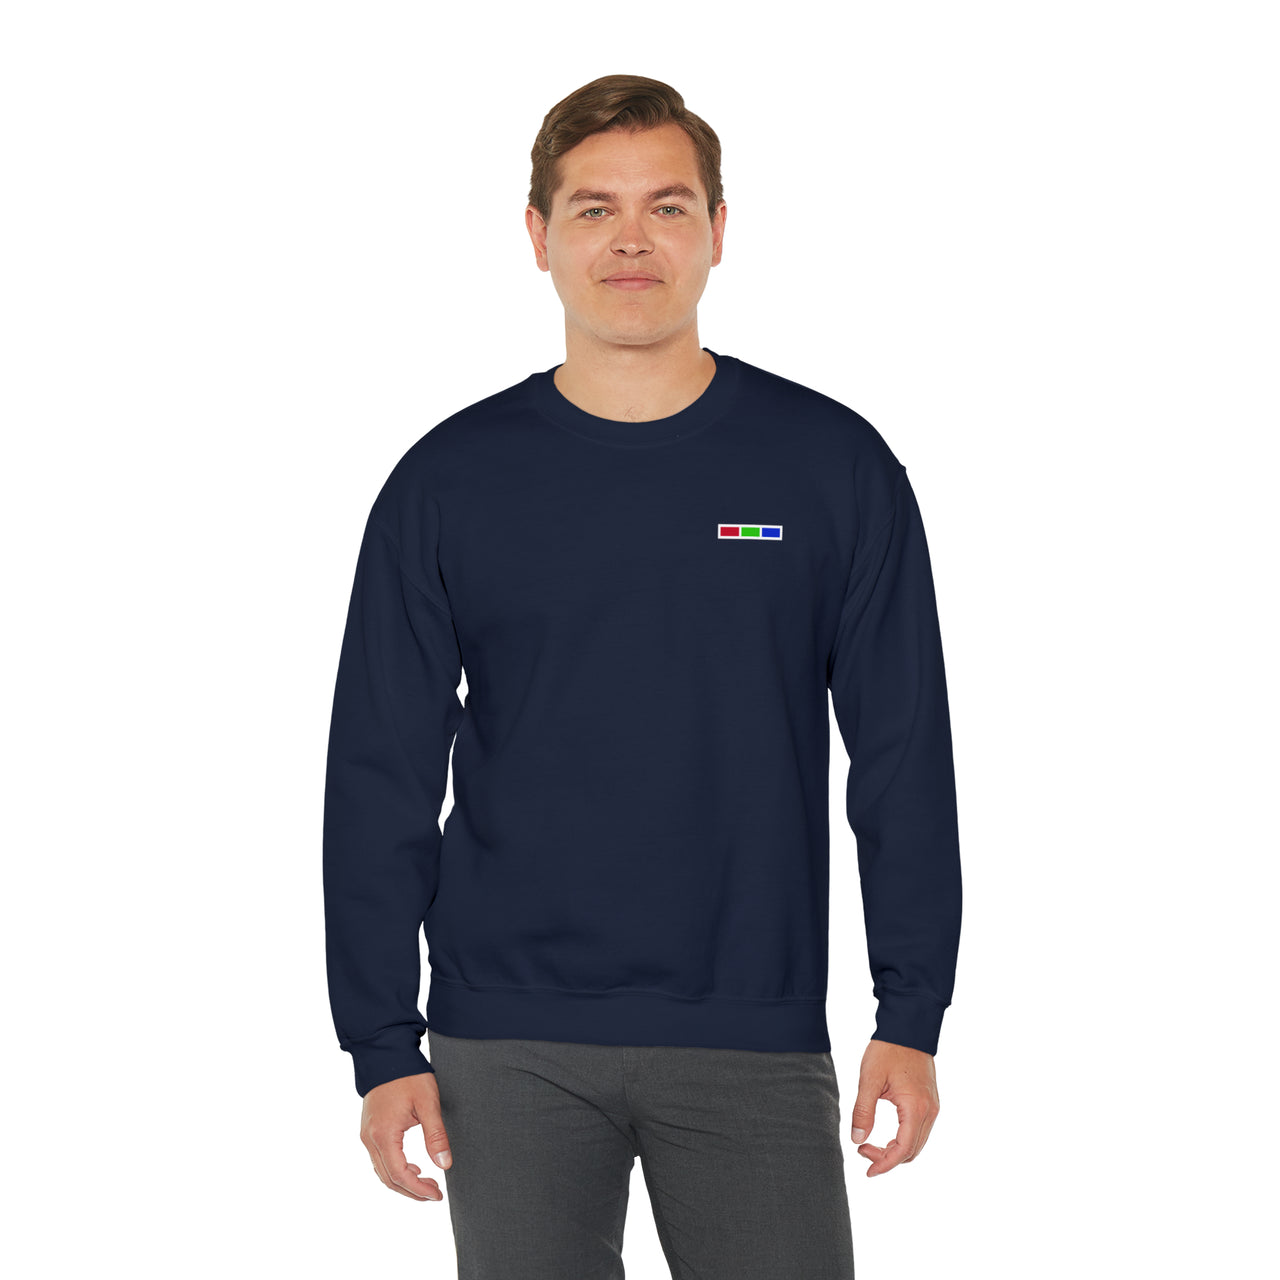 WarmHug Crewneck Sweatshirt